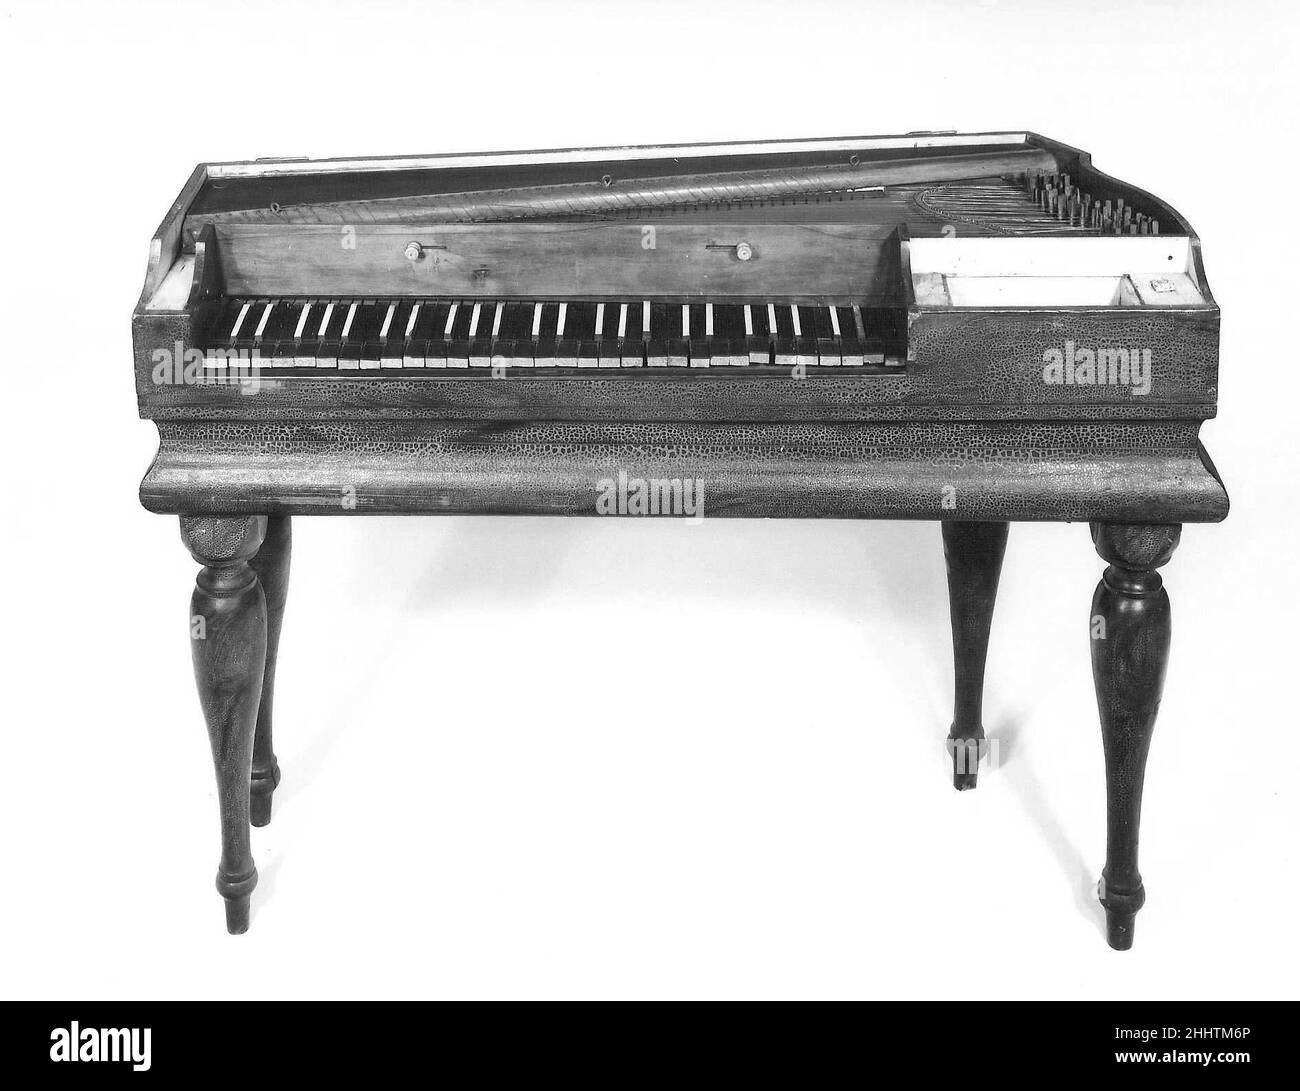 Piano carré ca.1790 attribué à Johann Matthäus Schmahl allemand la forme du boîtier de ce piano est faite pour ressembler à une harpe qui se trouve sur son côté.Mozart aurait soi-disant porté un piano comme celui-ci pour s'entraîner dans ses voyages.Schmahl a appelé ce type d'instrument un harfe liegende, ou piano à harpe.Ce type d'instrument a probablement été fait pour imiter les dulcimers martelés qui étaient populaires à l'époque, en particulier le type connu sous le nom de pantalons, rendu célèbre par le joueur virtuose Hebenstreit Pantaleone.Il y a deux boutons au-dessus du clavier, l'un contrôle un muet et l'autre interpose leathe Banque D'Images